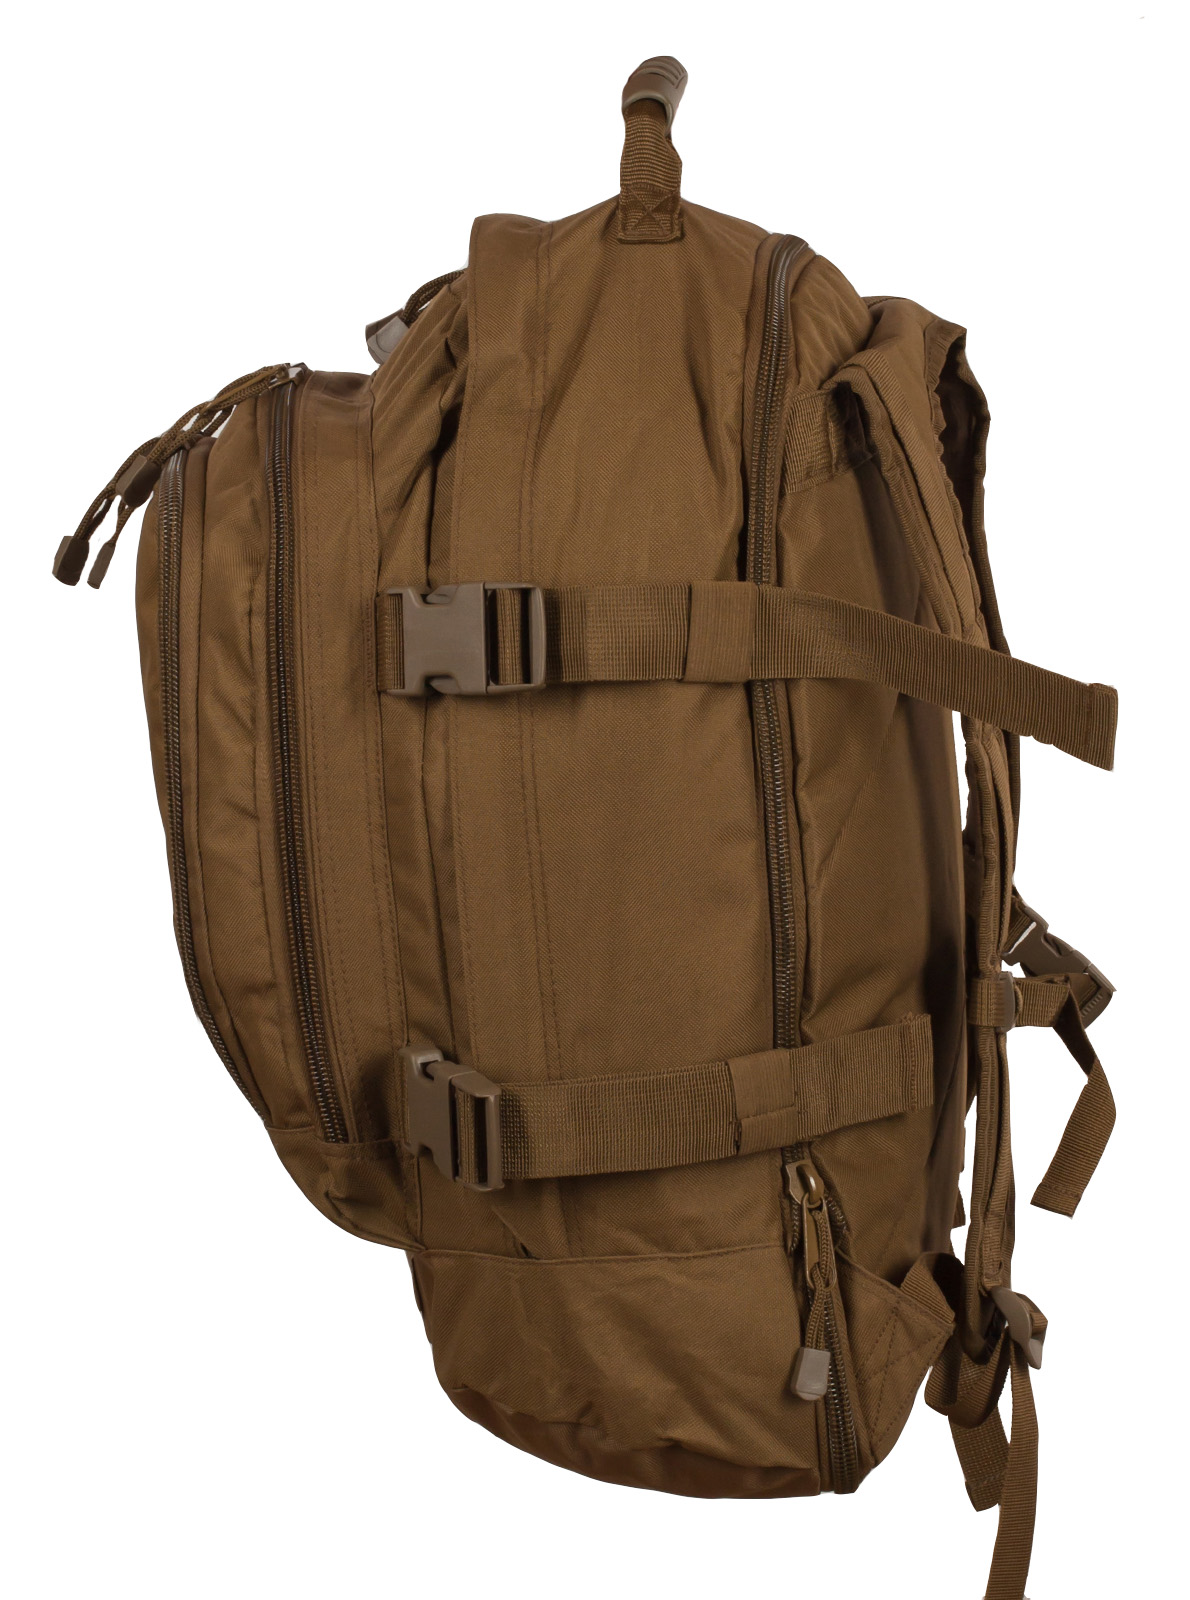 Штурмовой надежный рюкзак с нашивкой Охотничий Спецназ(40-64 л) 